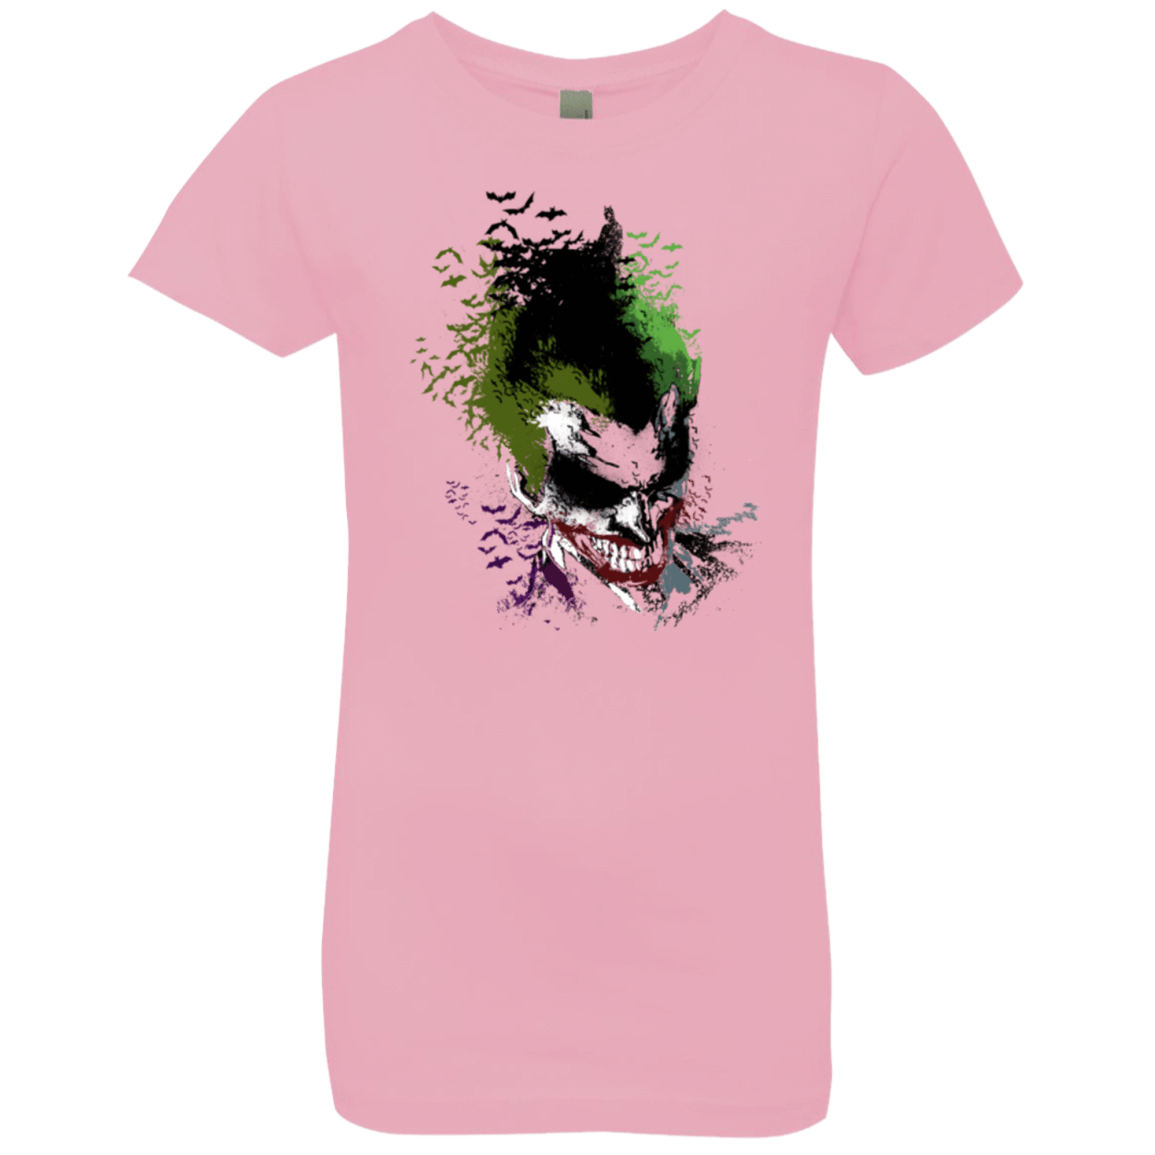 T-Shirts Light Pink / YXS Joker 2 Girls Premium T-Shirt